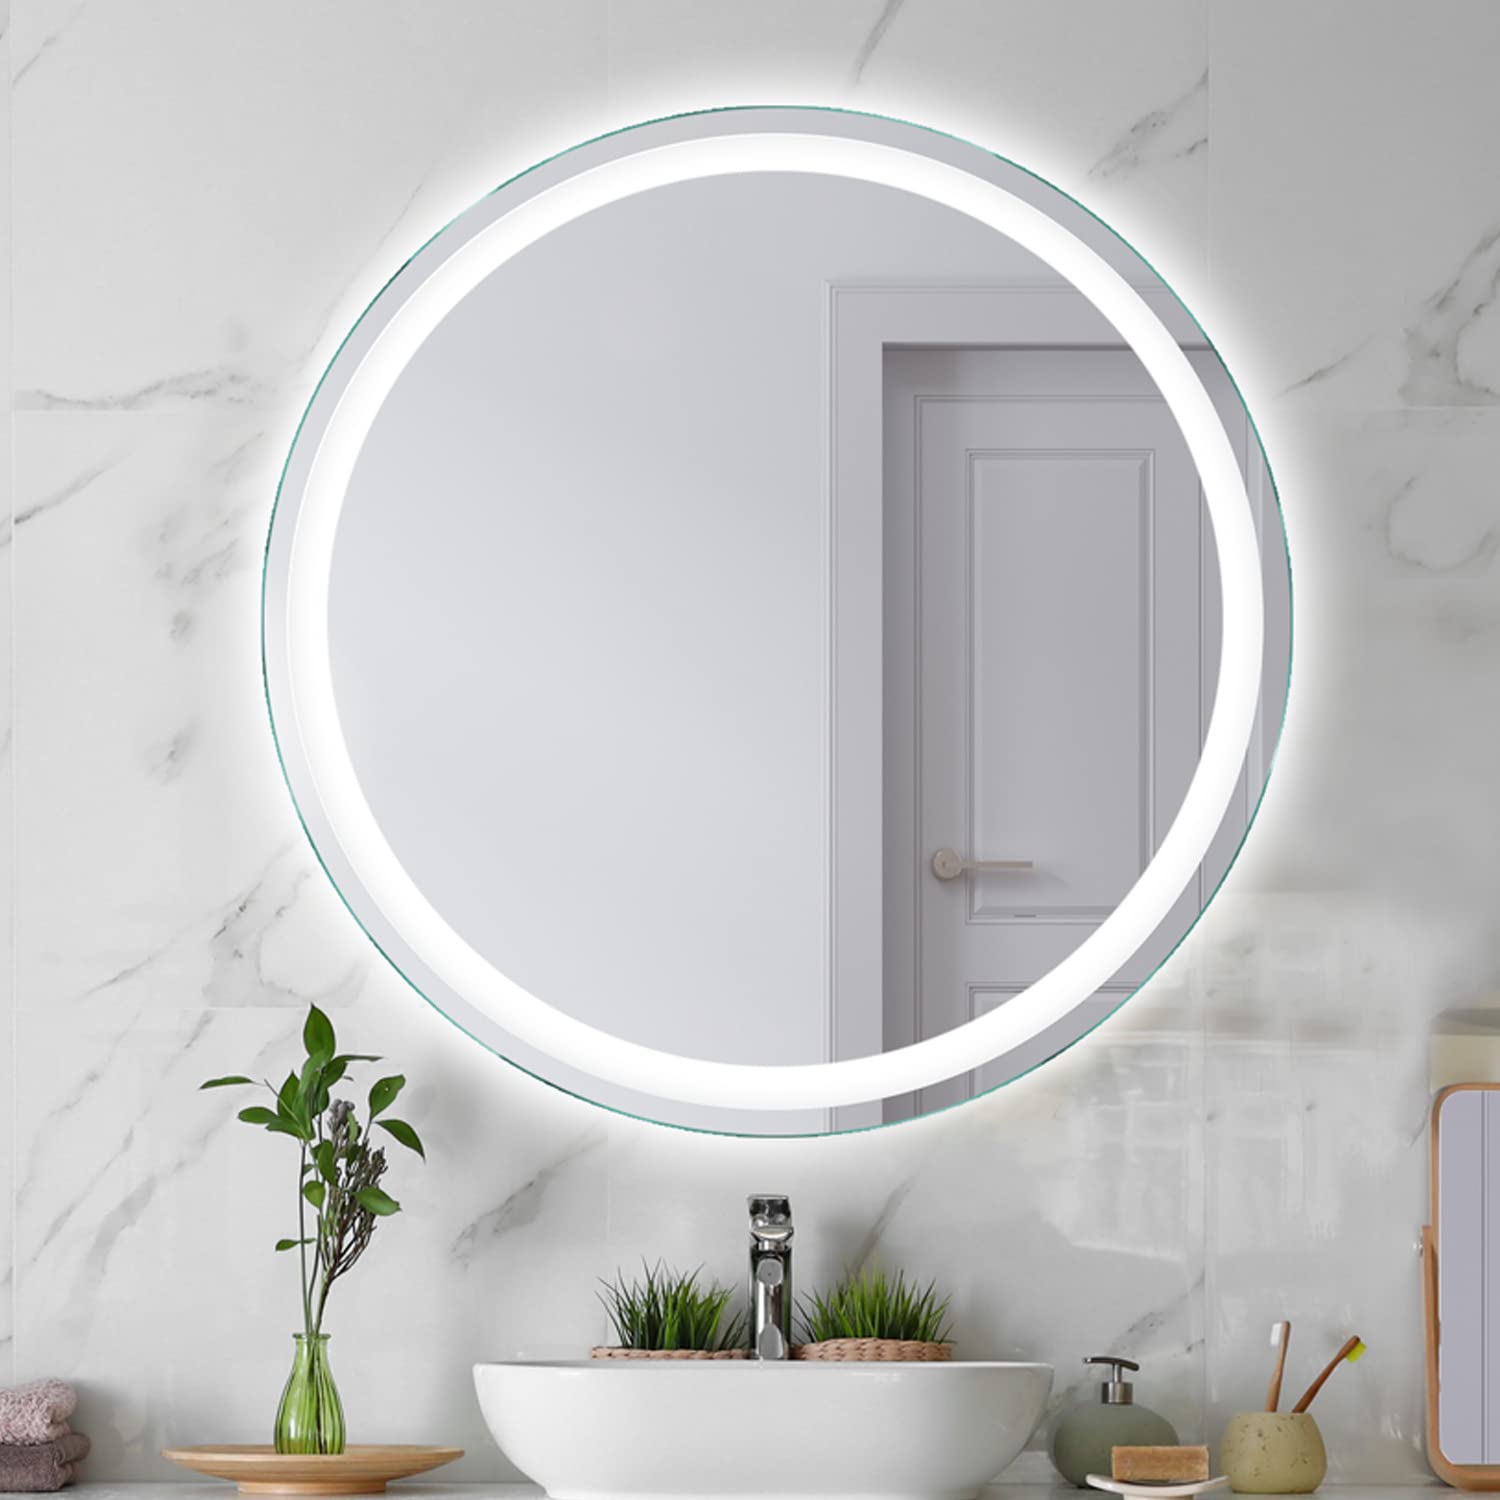 SARAR Runder Wandspiegel mit rundum LED-Beleuchtung 45cm Made in Germany Designo MAR111 Badspiegel Spiegel mit Beleuchtung Badezimmerspiegel